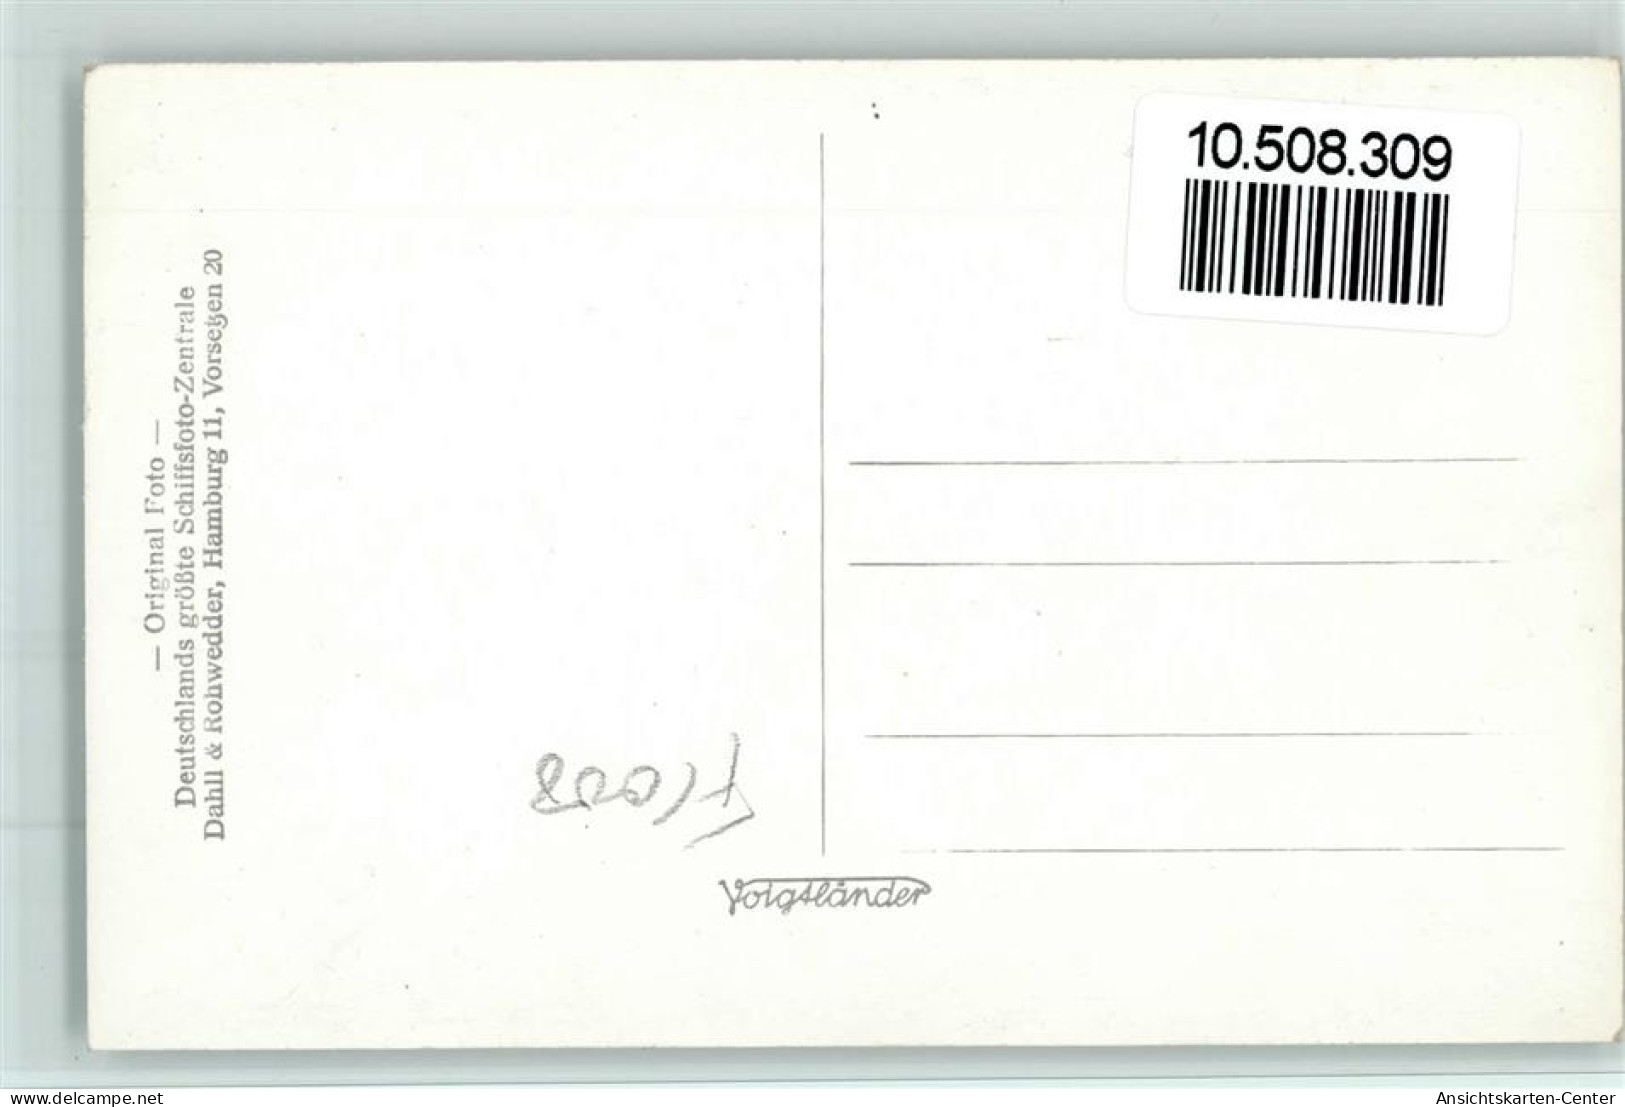 10508309 - Norddeutscher Lloyd Kronprinzessin Cecilie - Dampfer